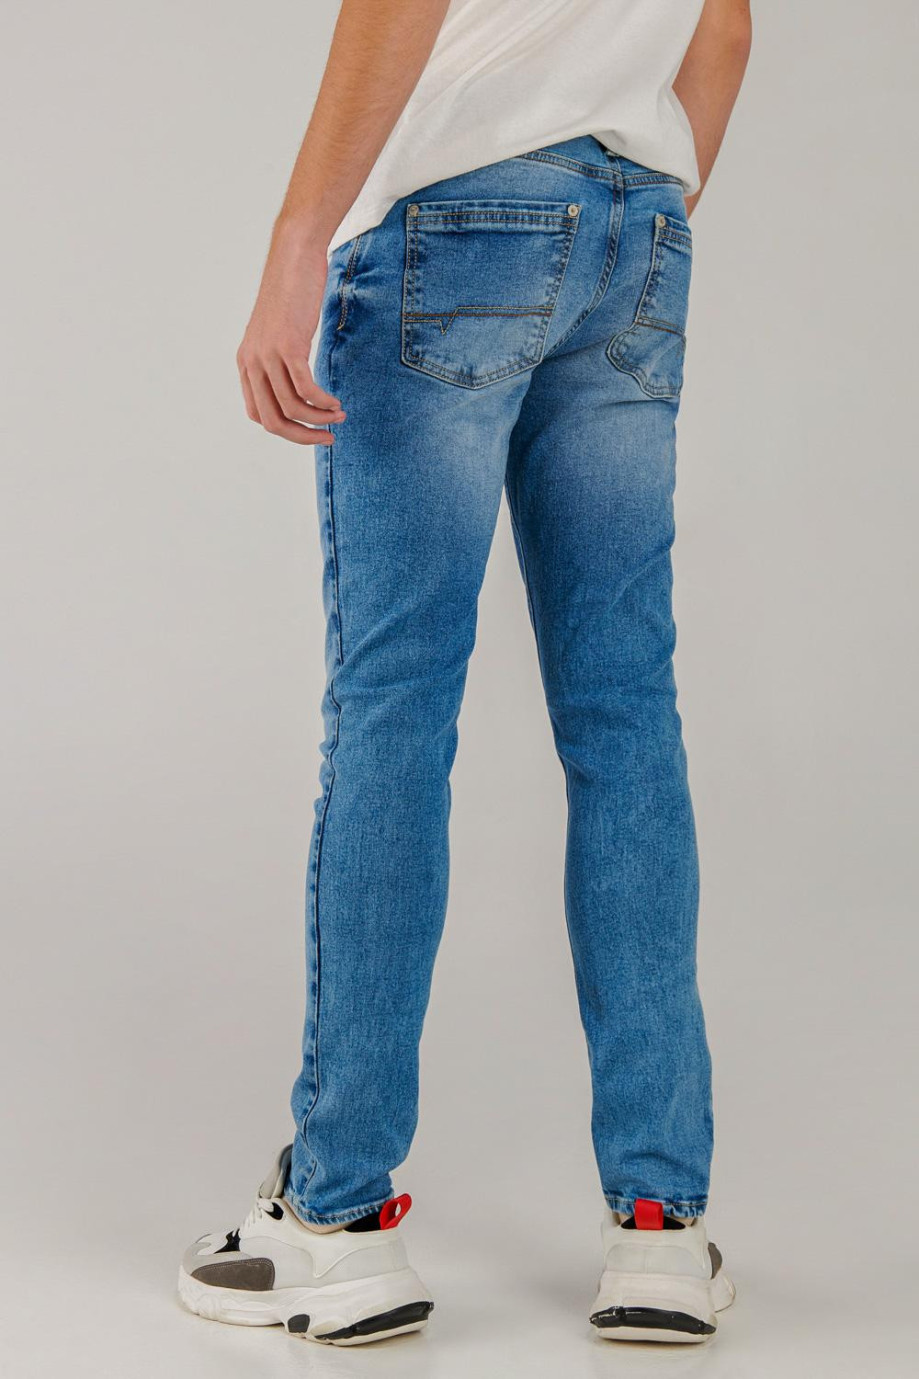 Jean azul claro skinny con desgastes de color y rotos en frente